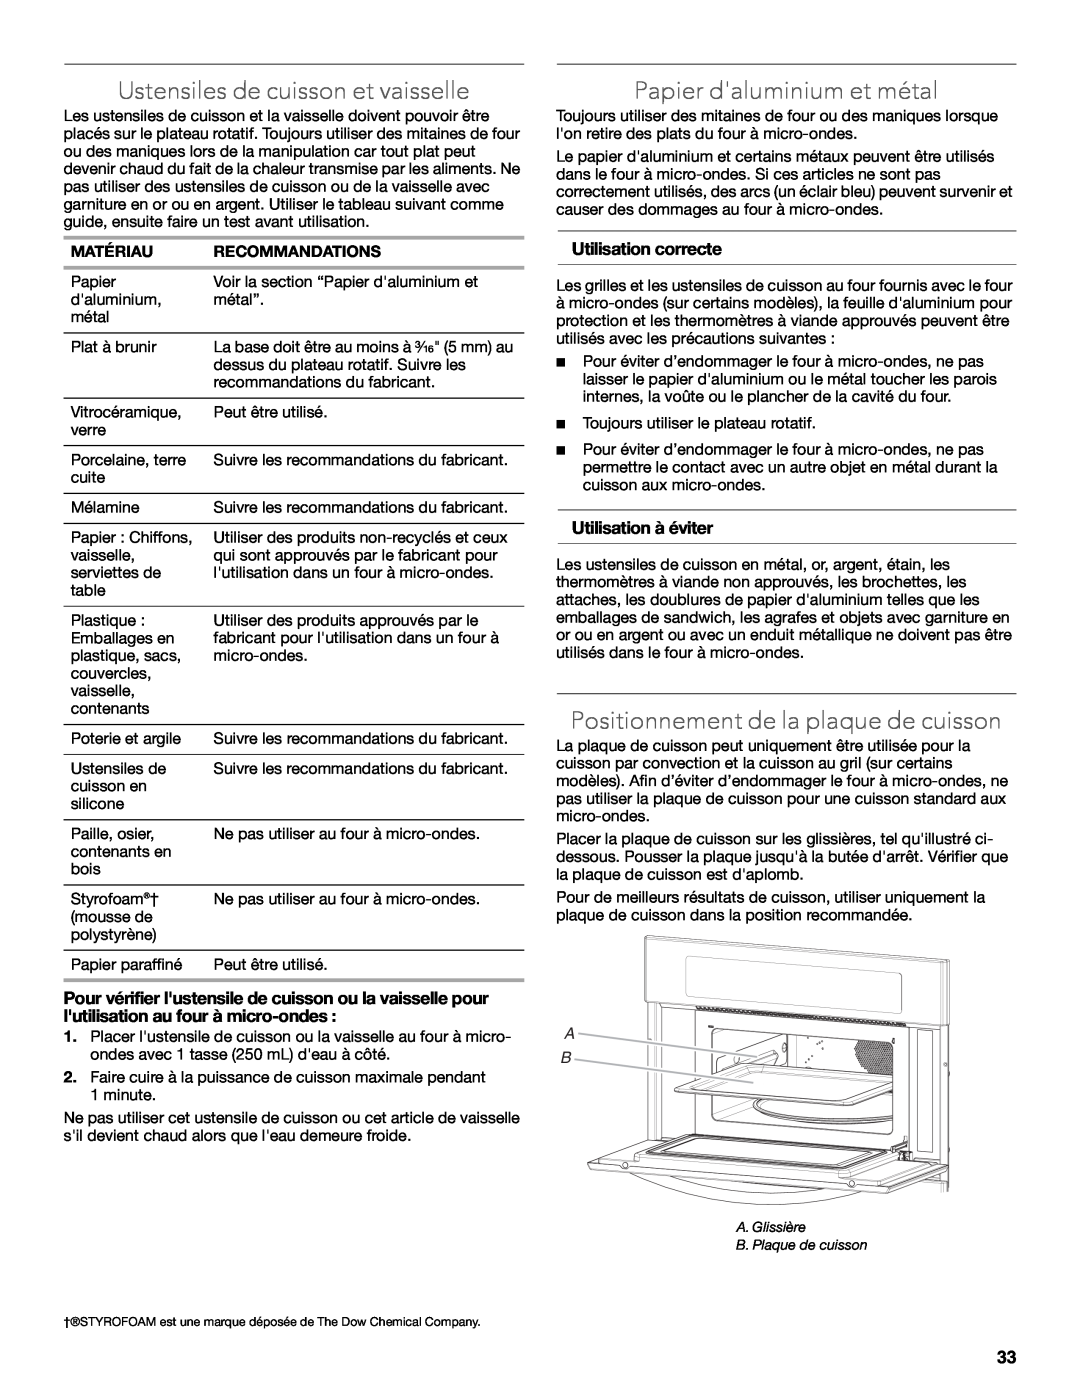 KitchenAid KBHS109B Ustensiles de cuisson et vaisselle, Papier daluminium et métal, Positionnement de la plaque de cuisson 